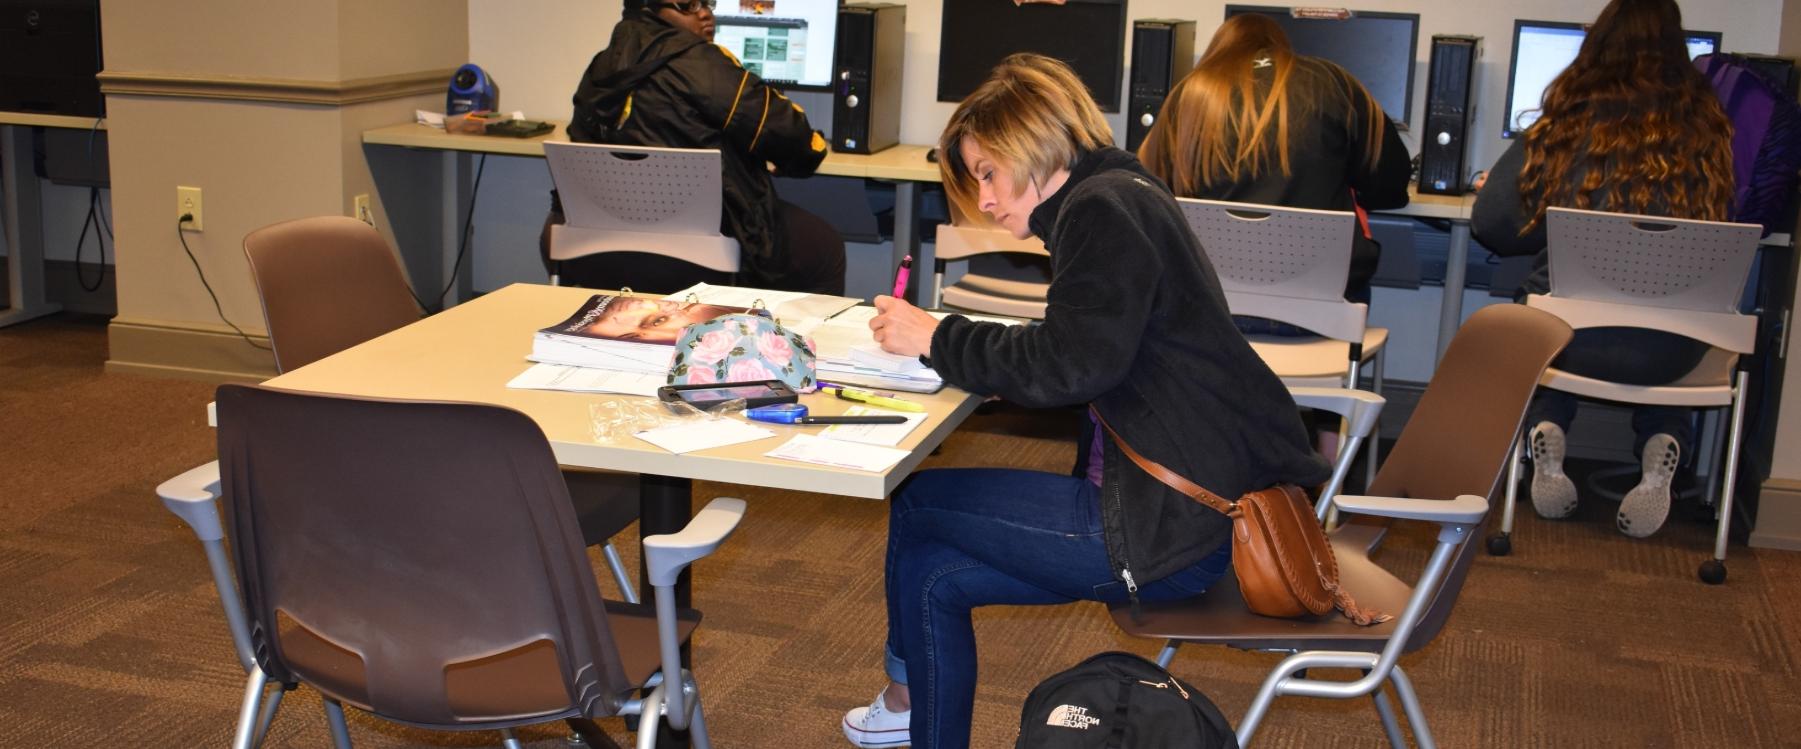 学生在计算机实验室里在课本上做笔记